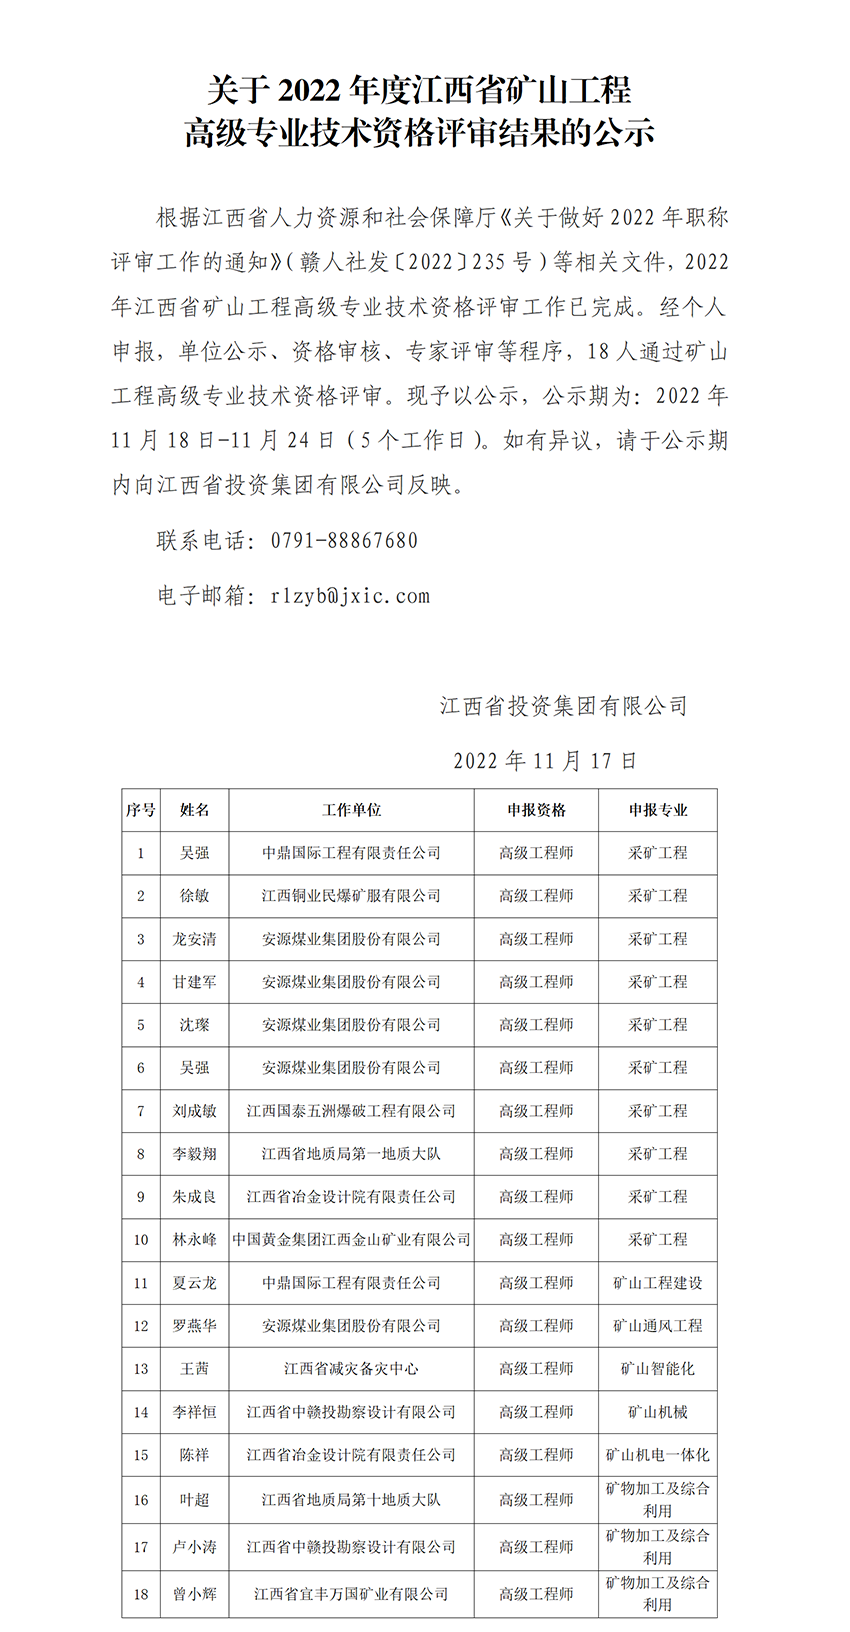 2022年江西省矿山工程中高级专业技术资格评审通过人员公示_01.png